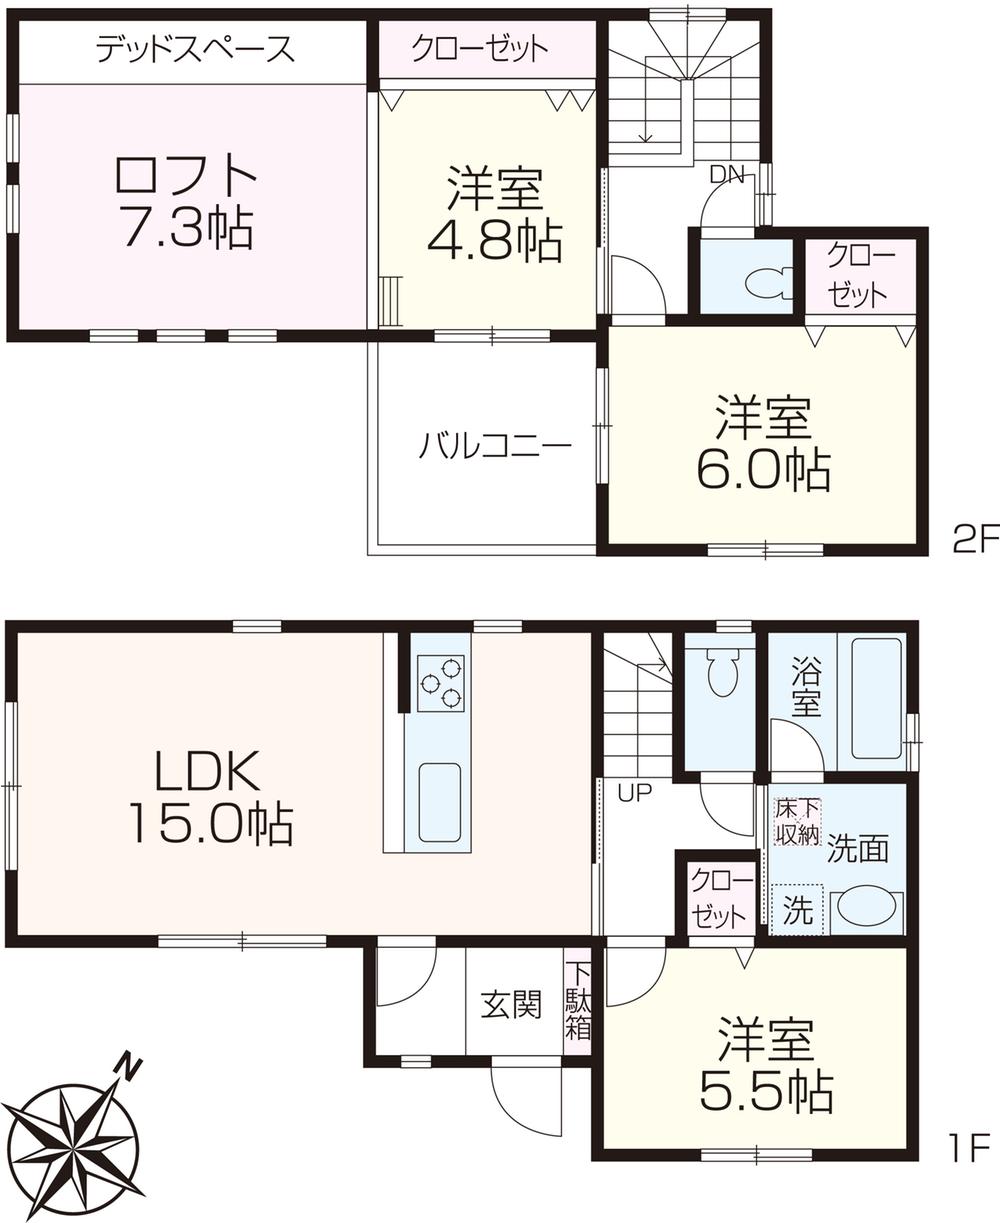 Floor plan. (A Building), Price 39,800,000 yen, 3LDK, Land area 98.33 sq m , Building area 77.21 sq m